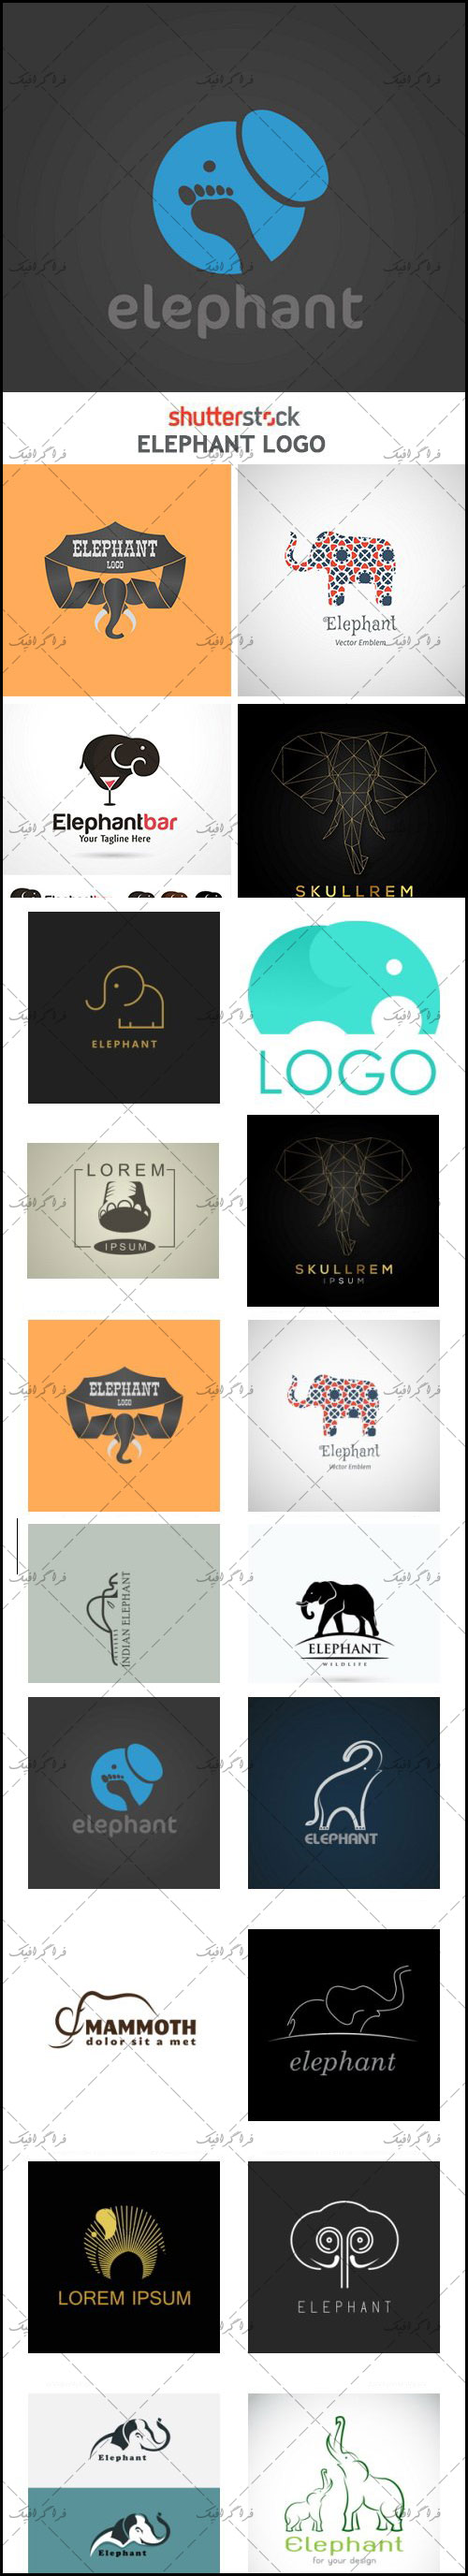 دانلود لوگو های فیل - Elephant Logos